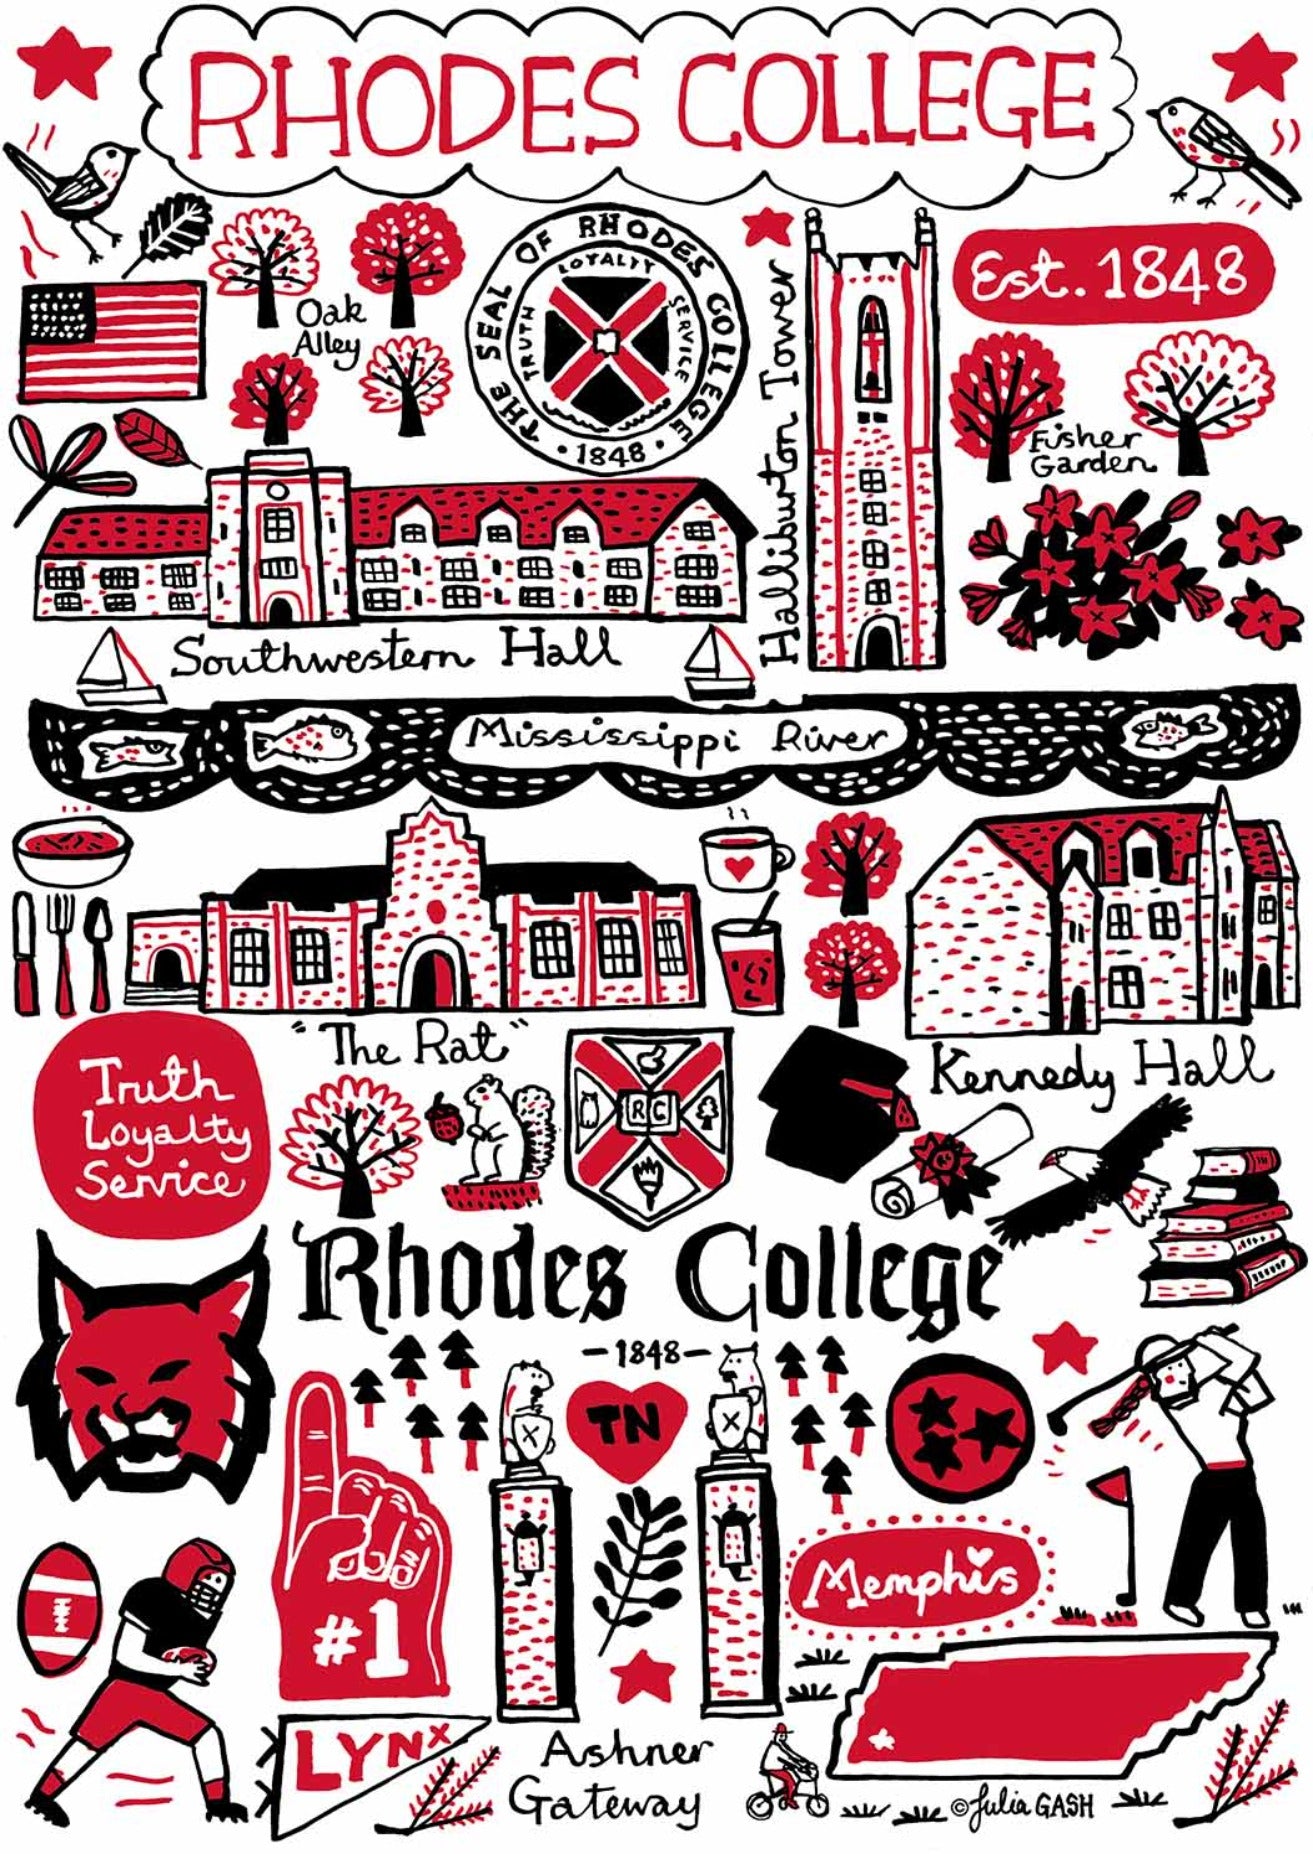 Rhodes College by Julia Gash